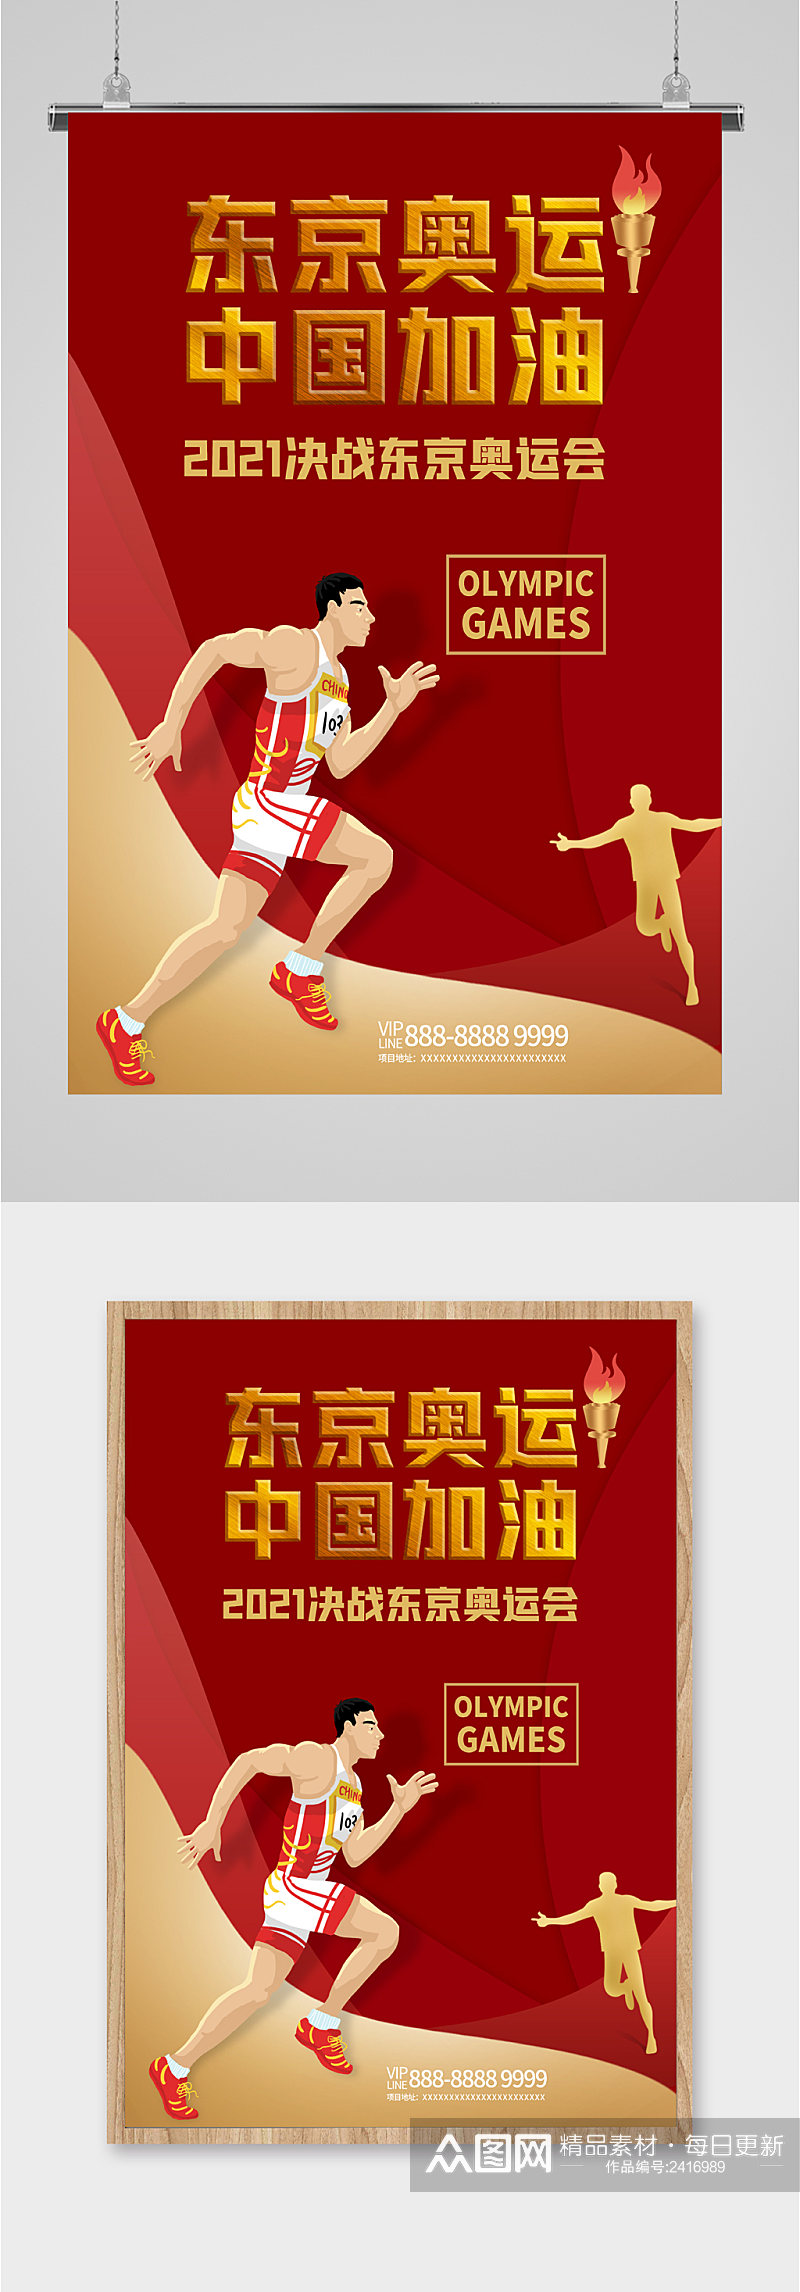 东京奥运会比赛中国加油海报素材